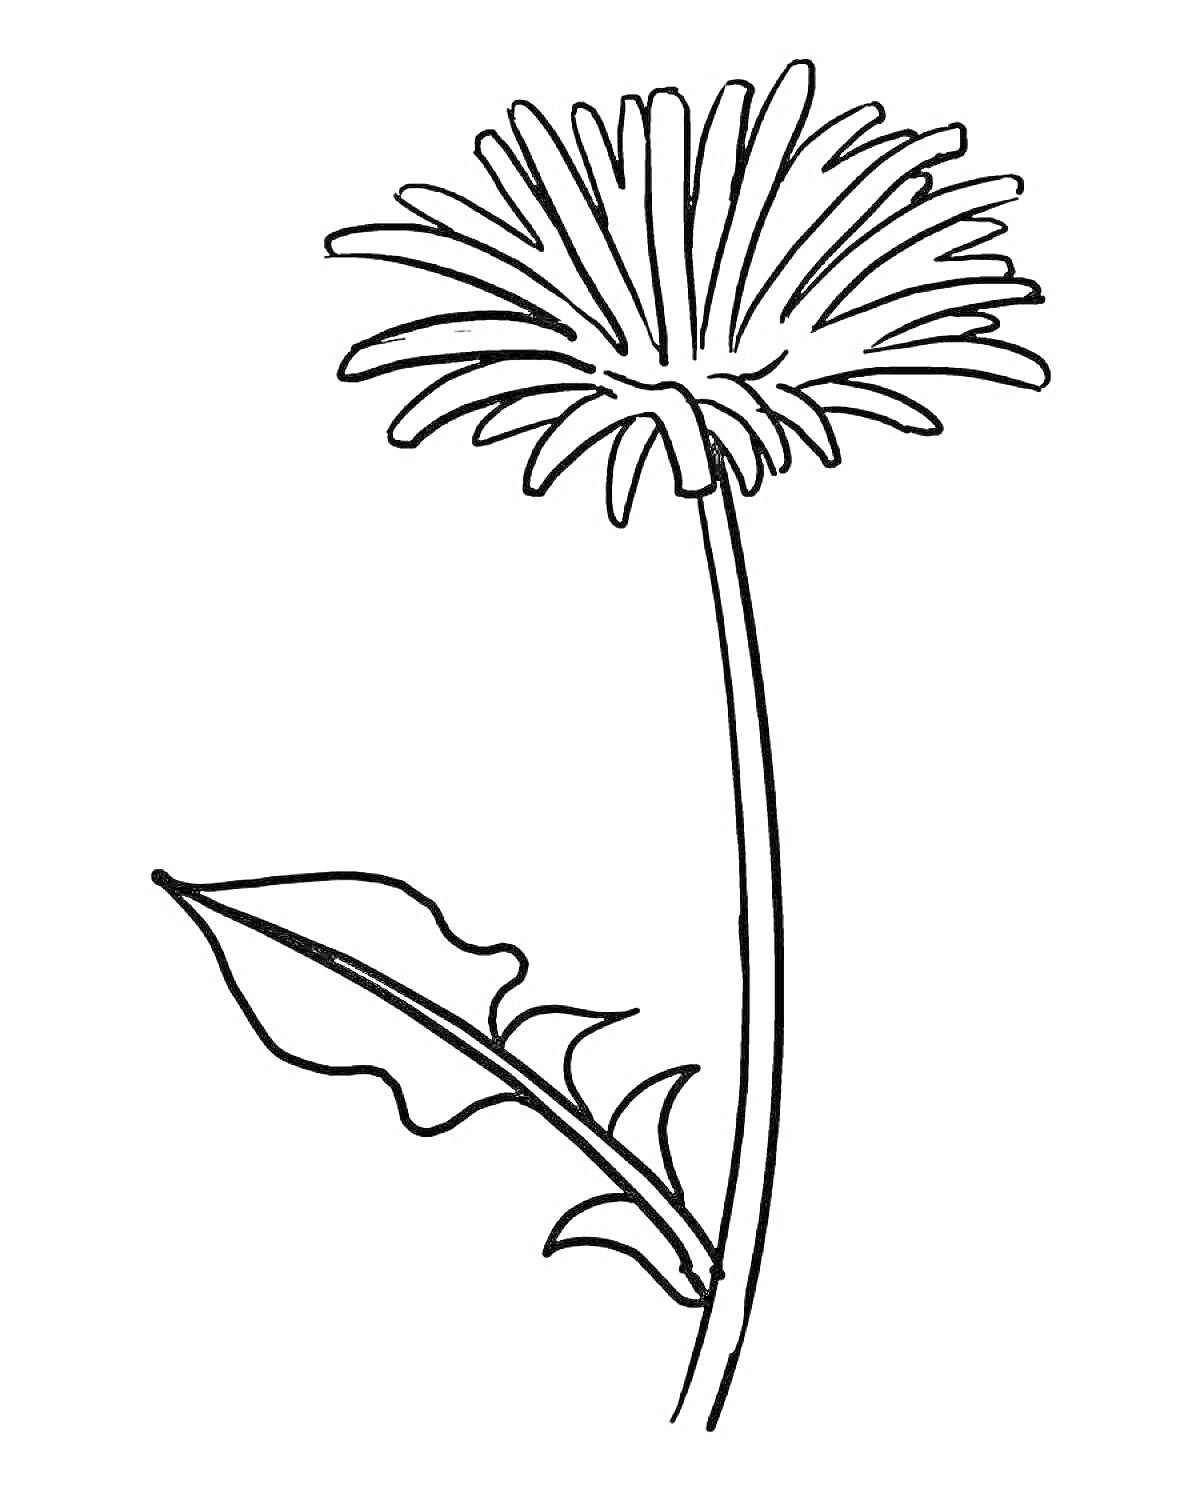 Раскраска Одуванчик с длинным стеблем и листьями